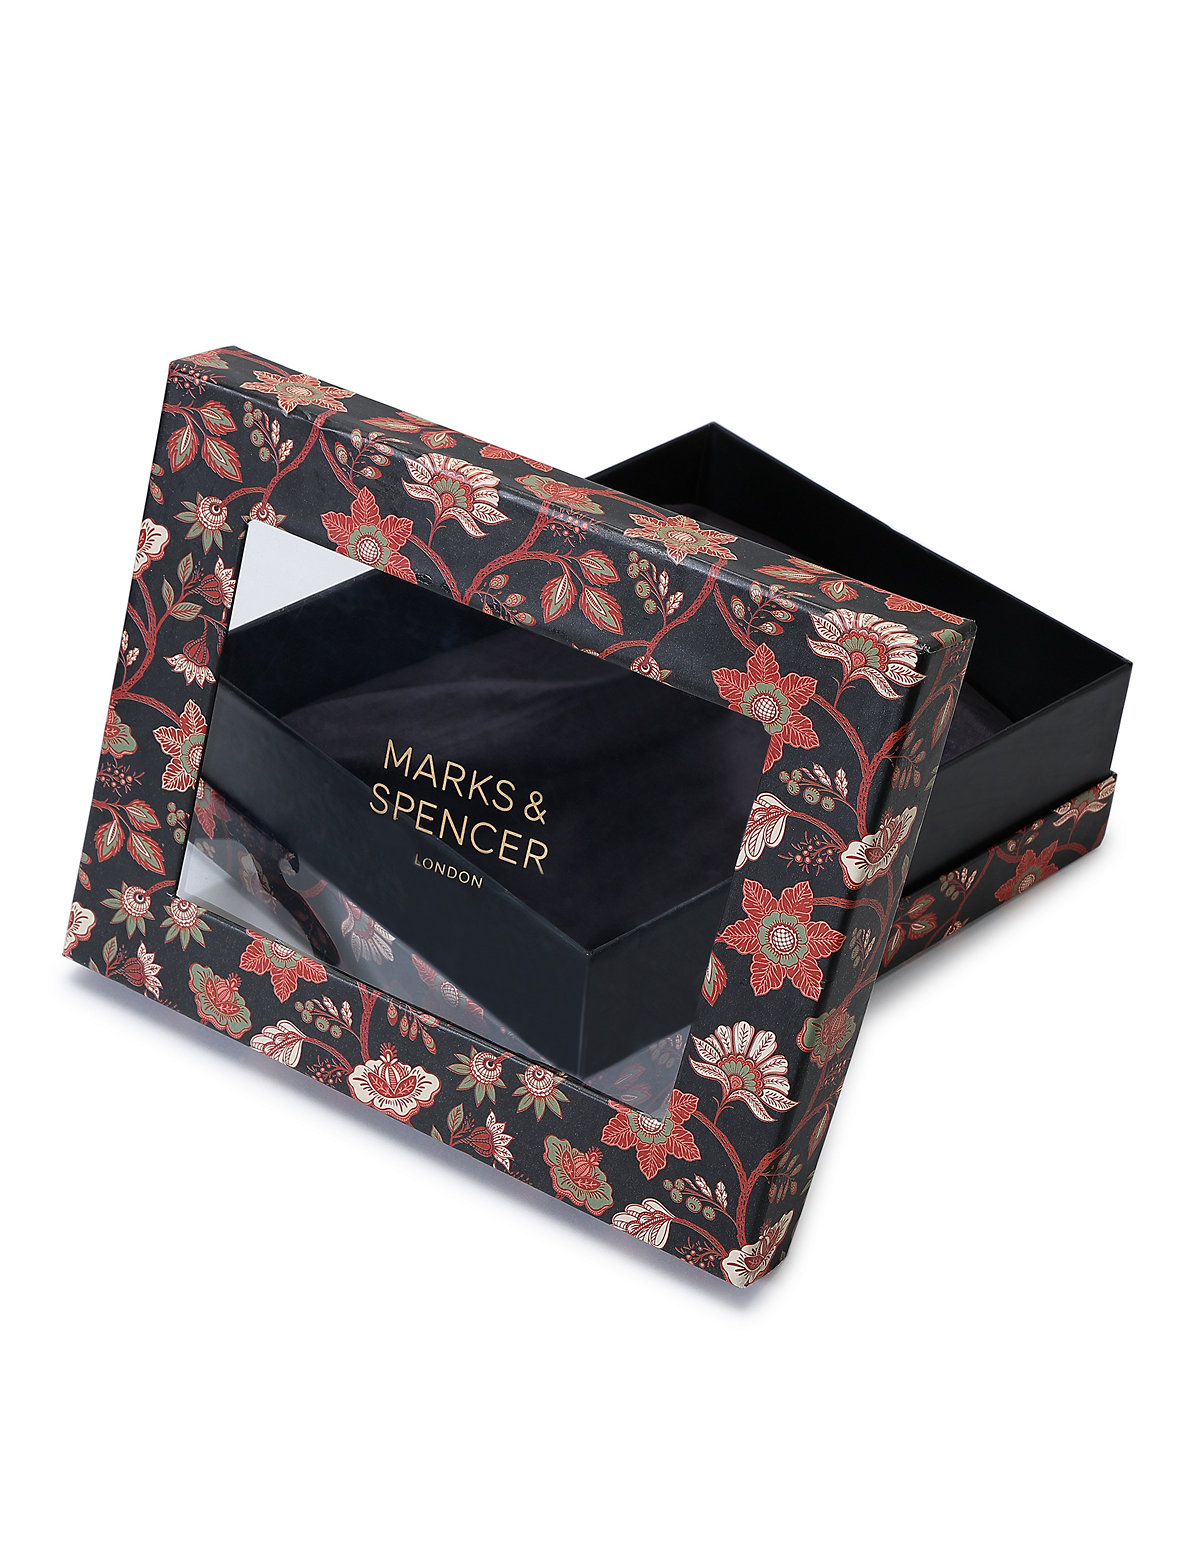 

Marks & Spencer Floral Print Gift Box (Black) (BLACK MIX)